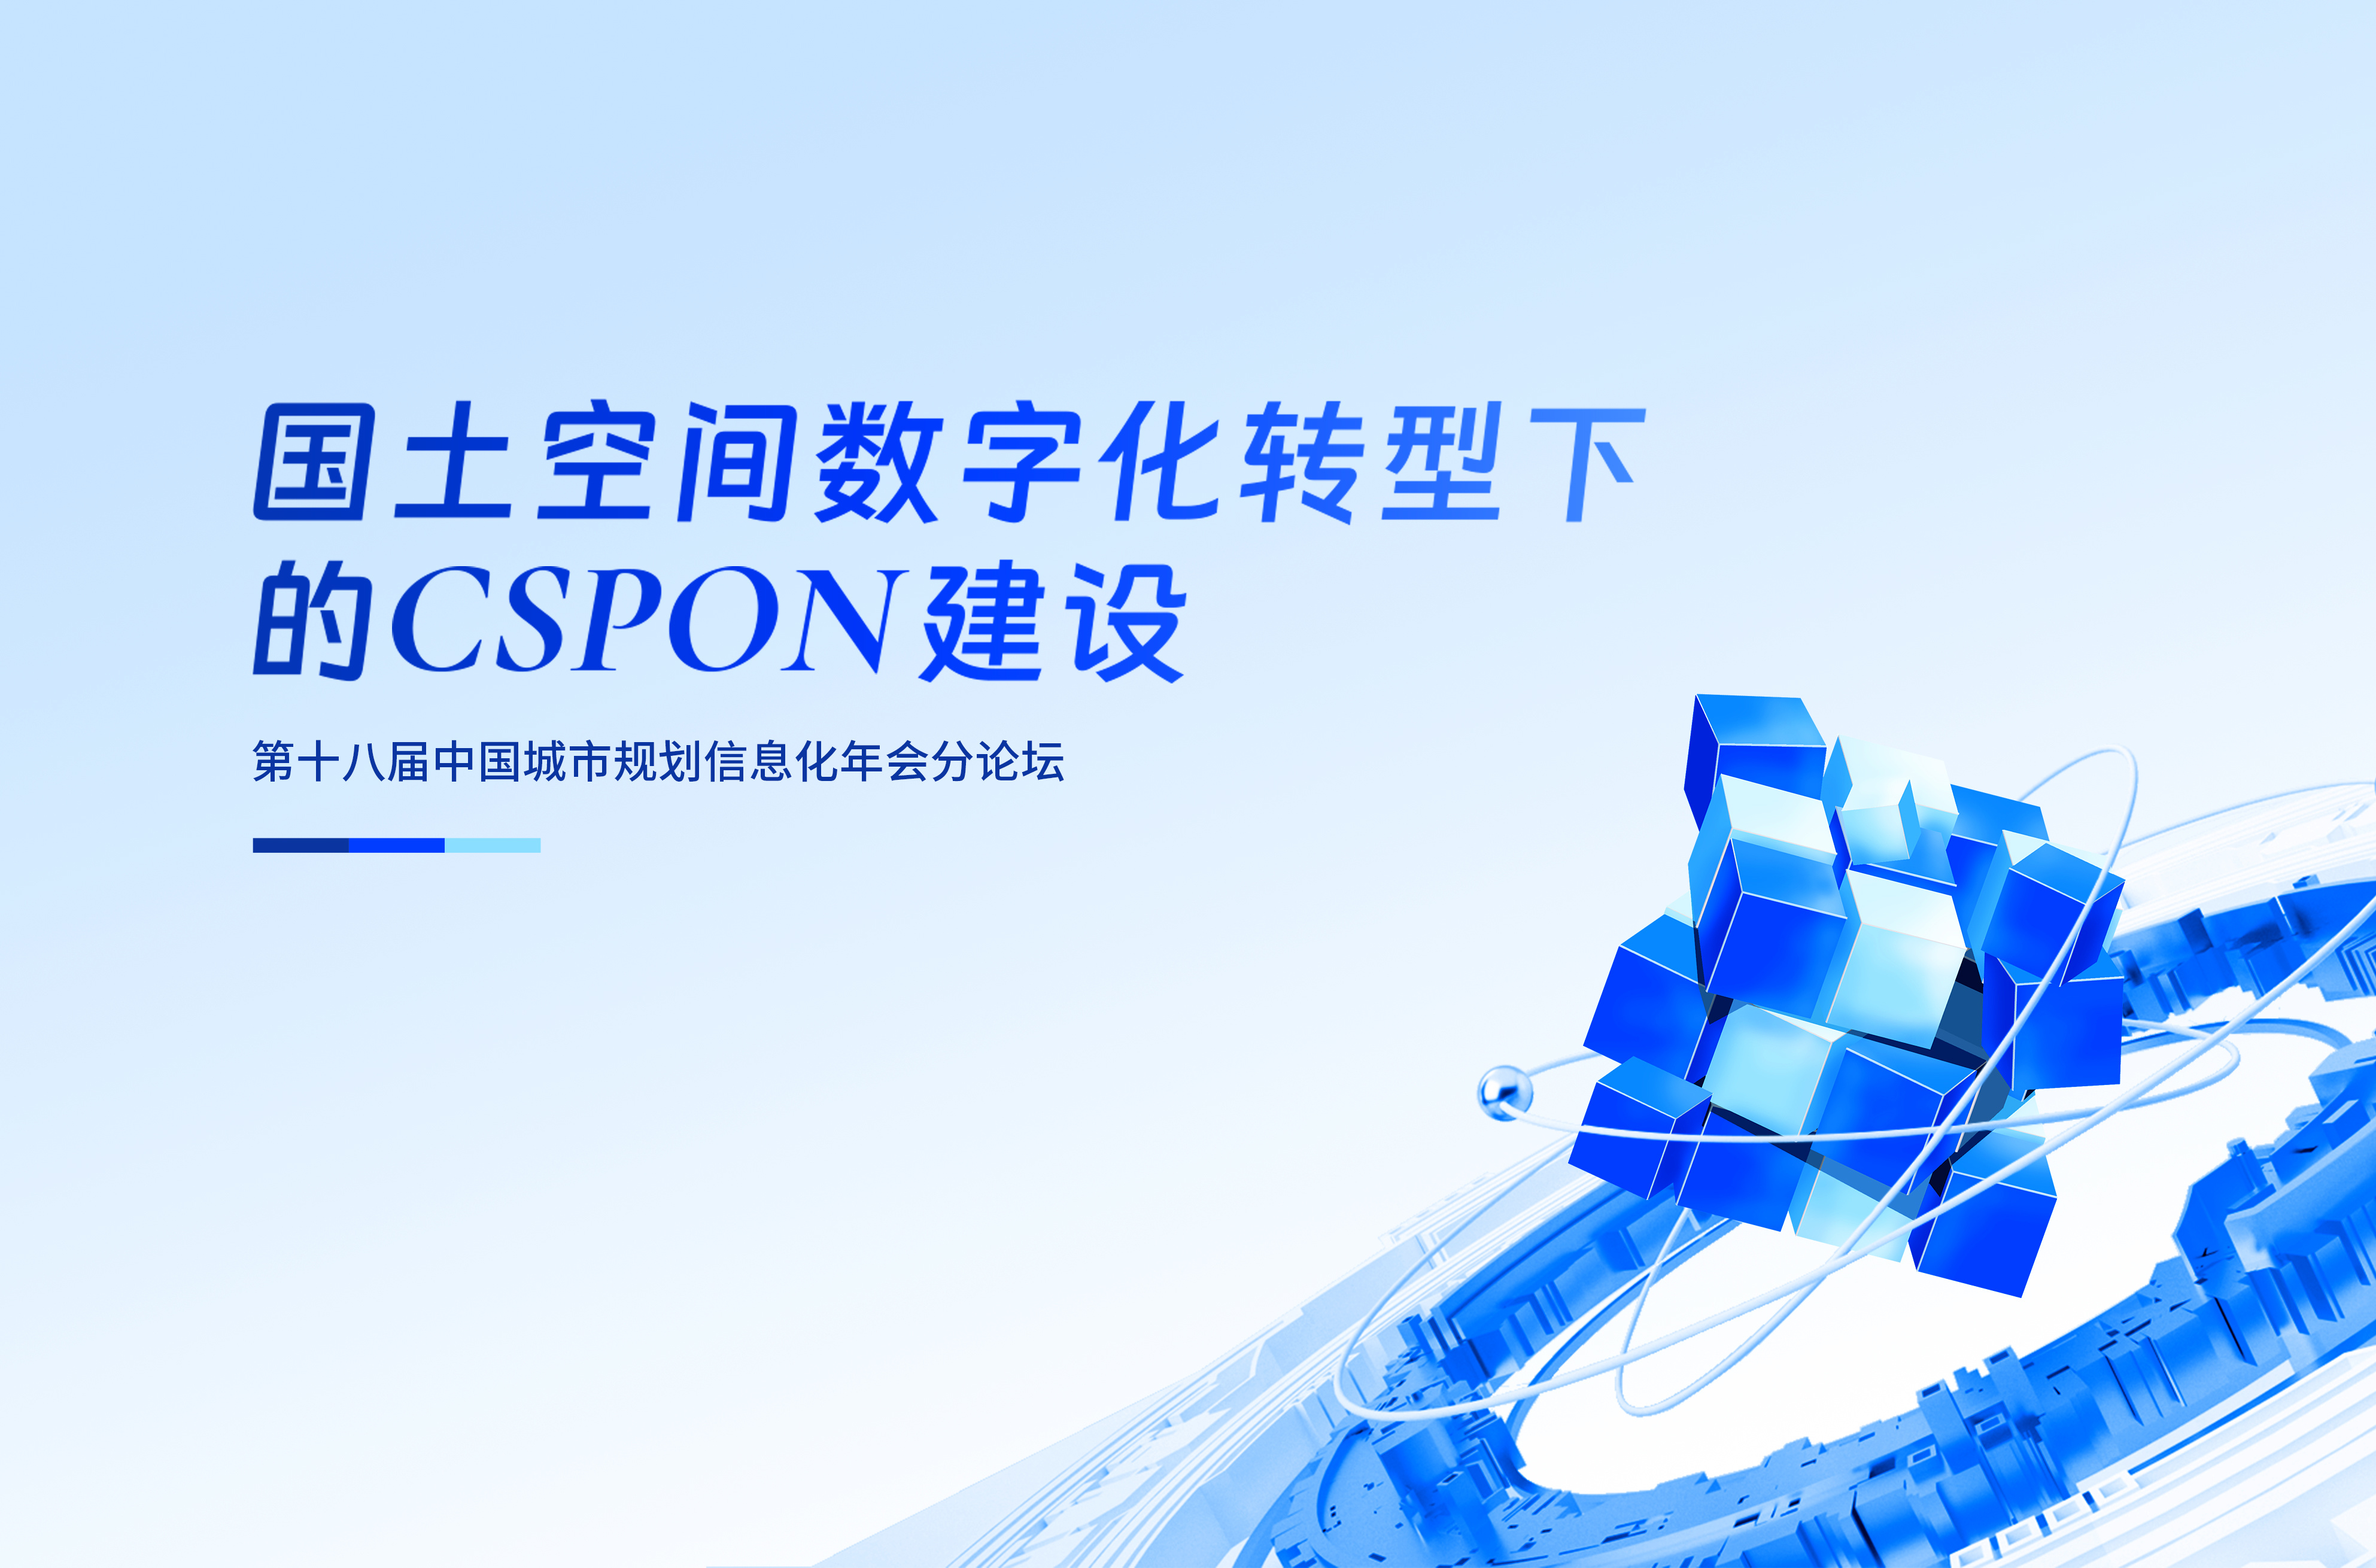 聚焦CSPON，助力国土空间数字化转型